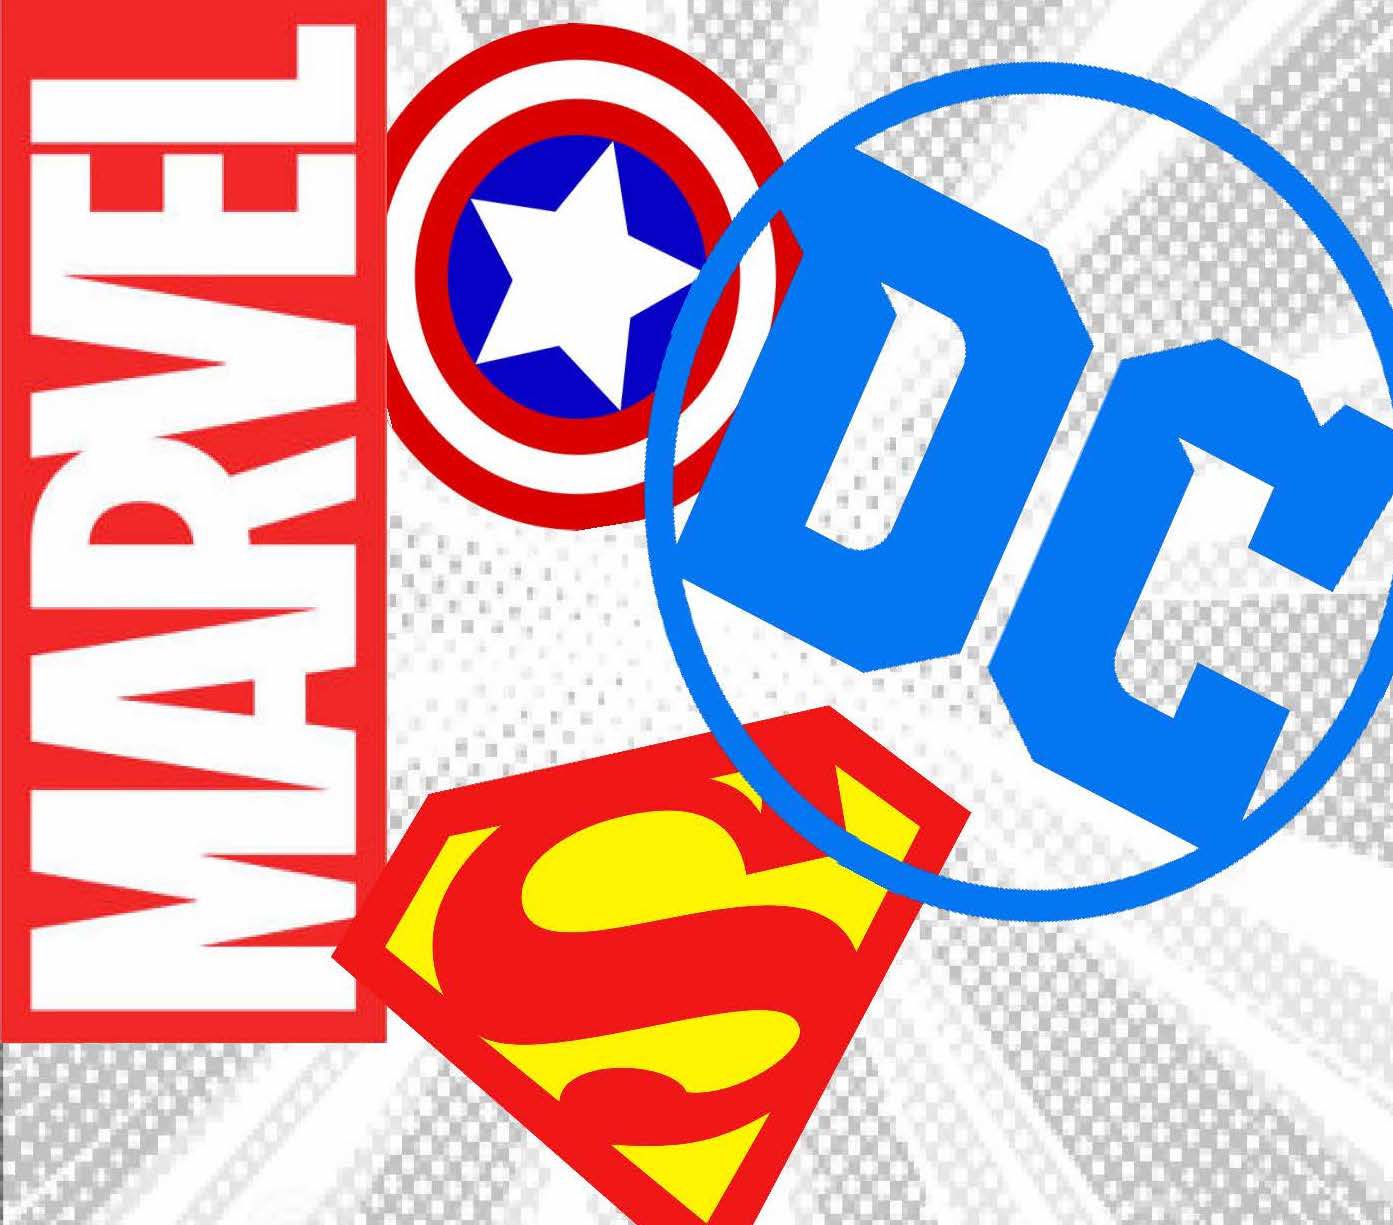 Marvel and DC/Warner Bros. Express Support for Black Community | GamesRadar+